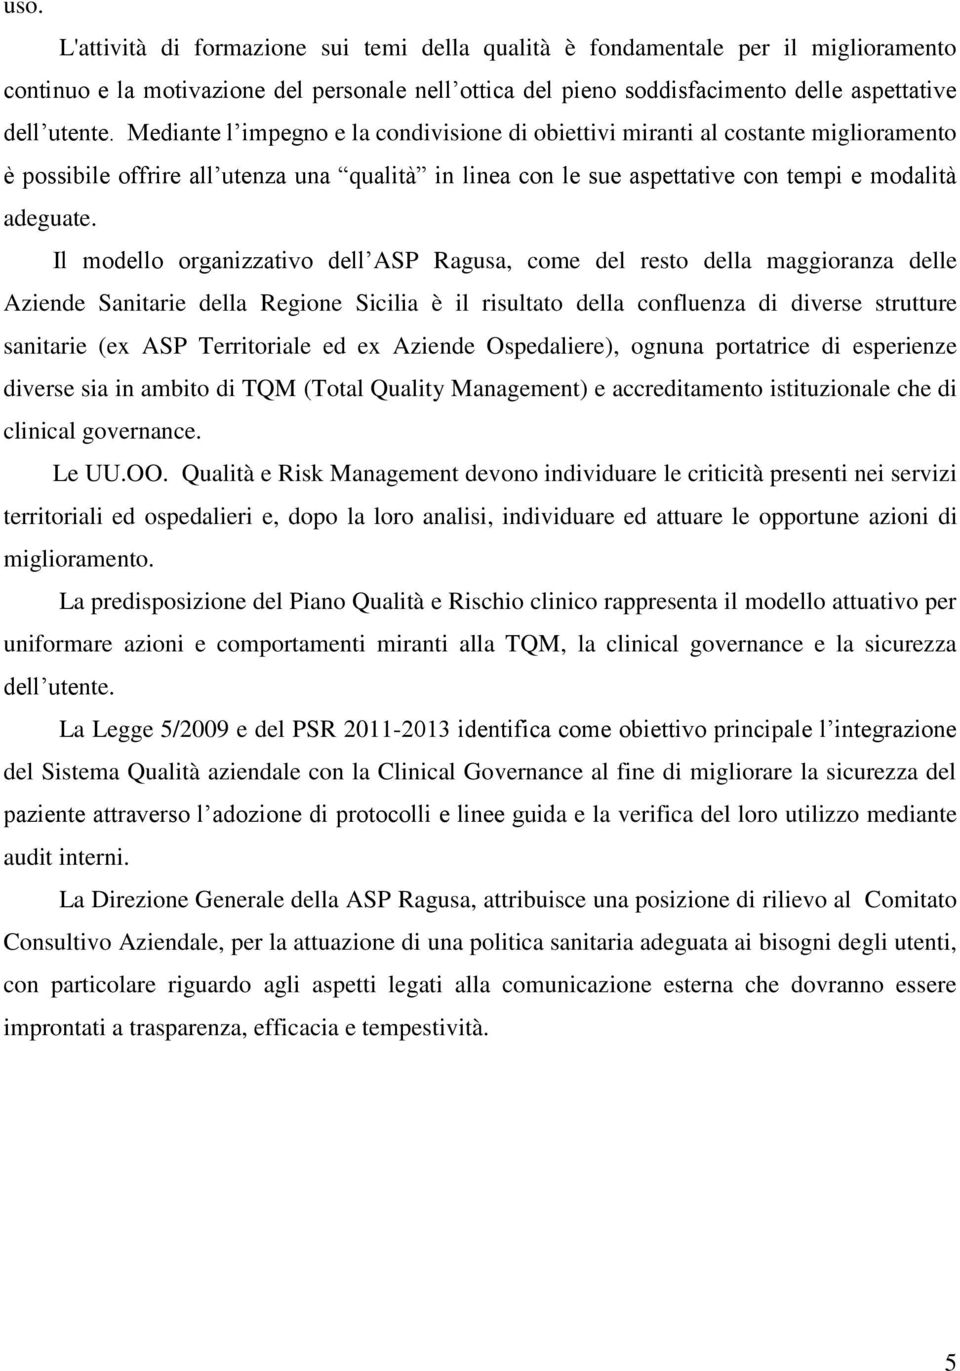 Il modello organizzativo dell ASP Ragusa, come del resto della maggioranza delle Aziende Sanitarie della Regione Sicilia è il risultato della confluenza di diverse strutture sanitarie (ex ASP